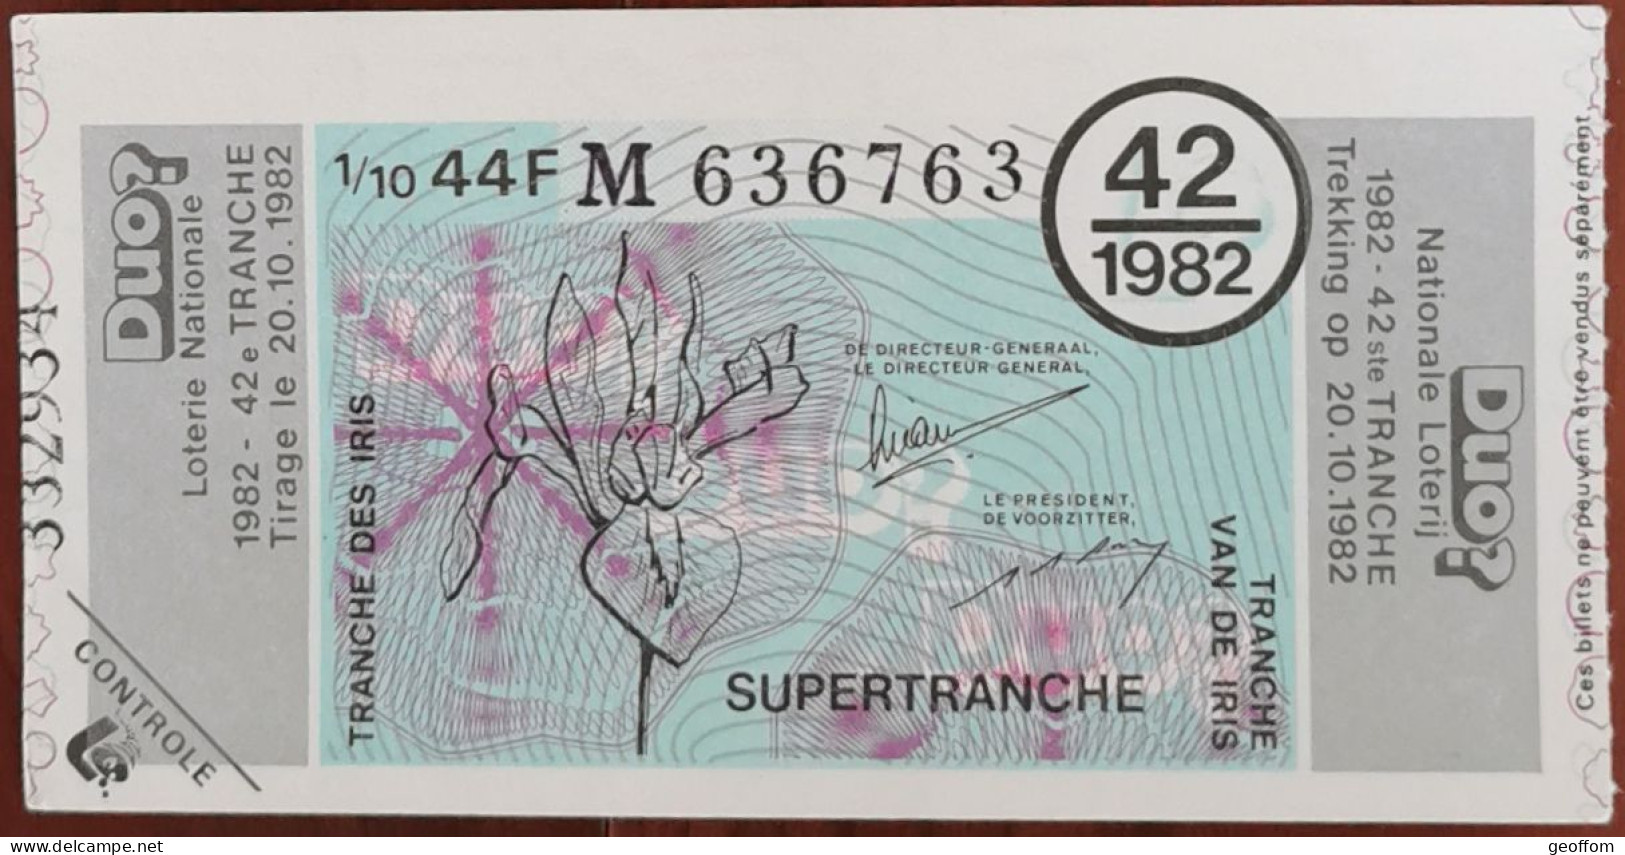 Billet De Loterie Nationale Belgique 1982 42e Tr - SuperTranche Des Iris - 20-10-1982 - Billetes De Lotería